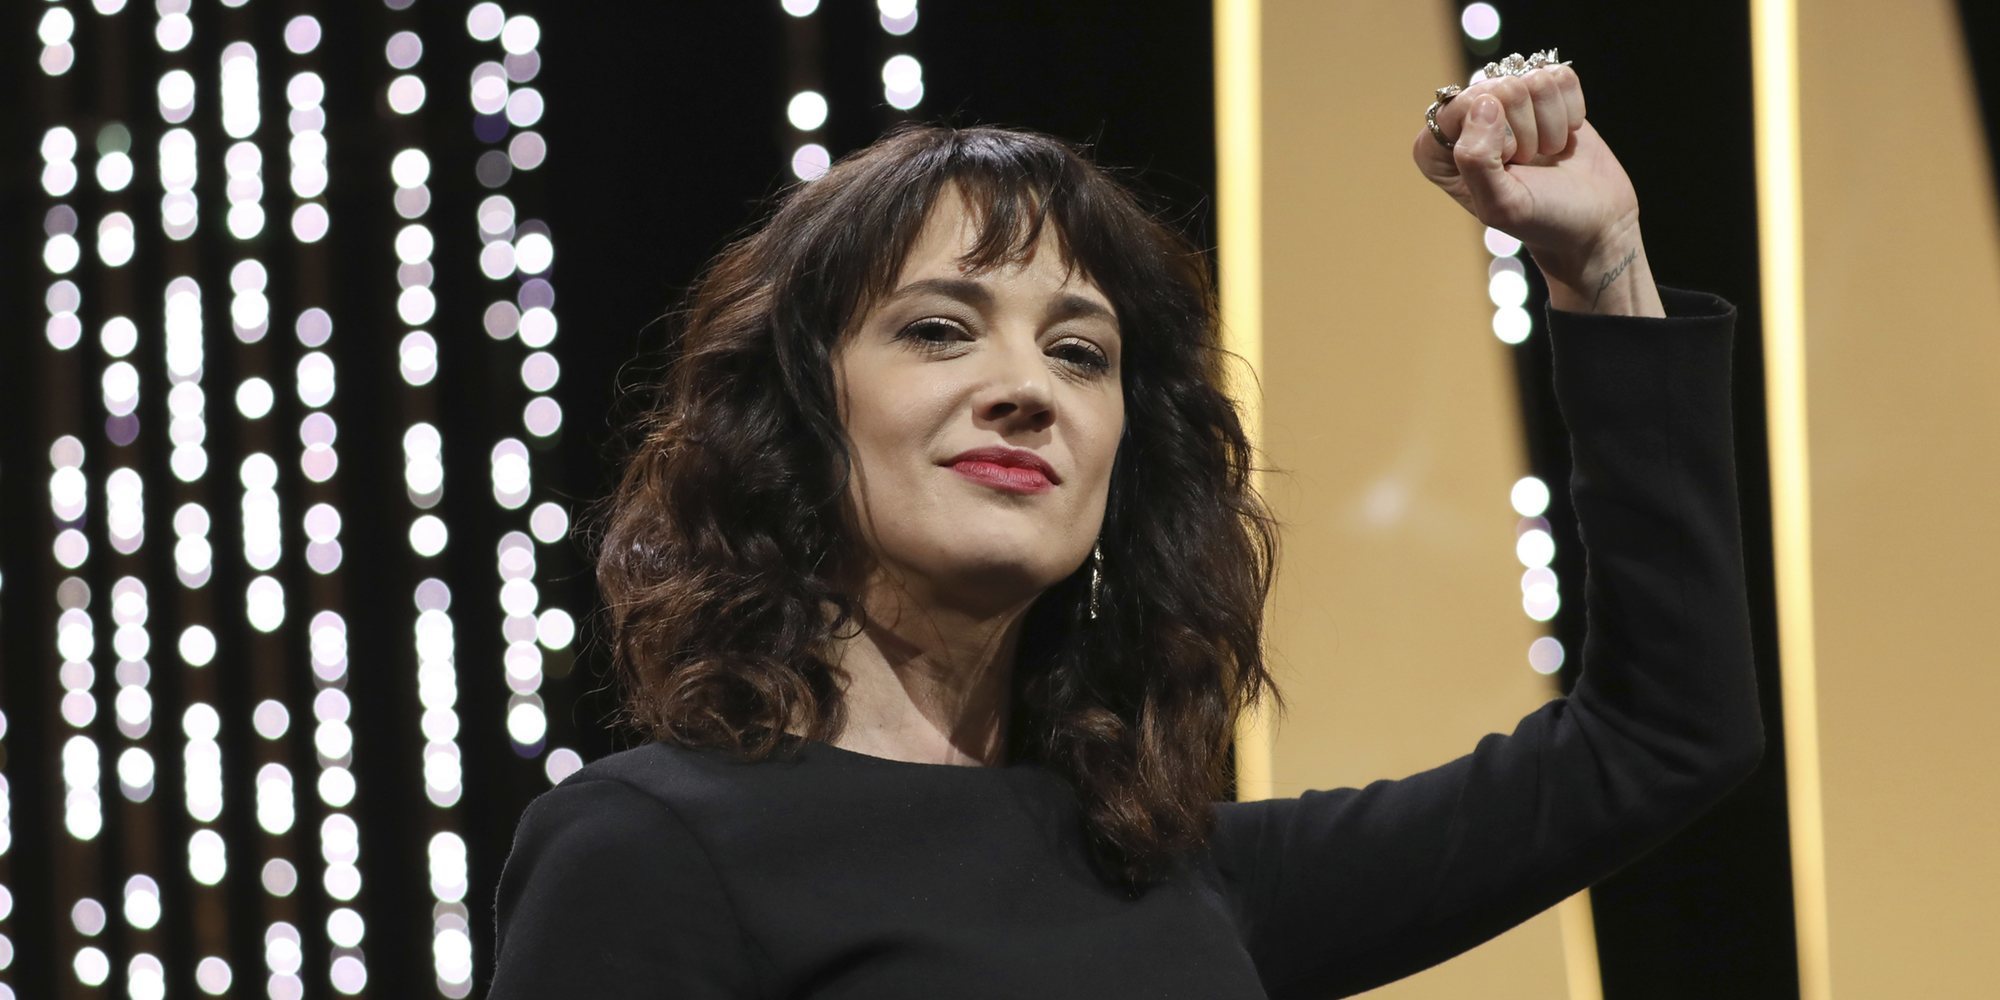 El discurso de Asia Argento que enmudeció Cannes 2018: "Fui violada aquí por Harvey Weinstein"